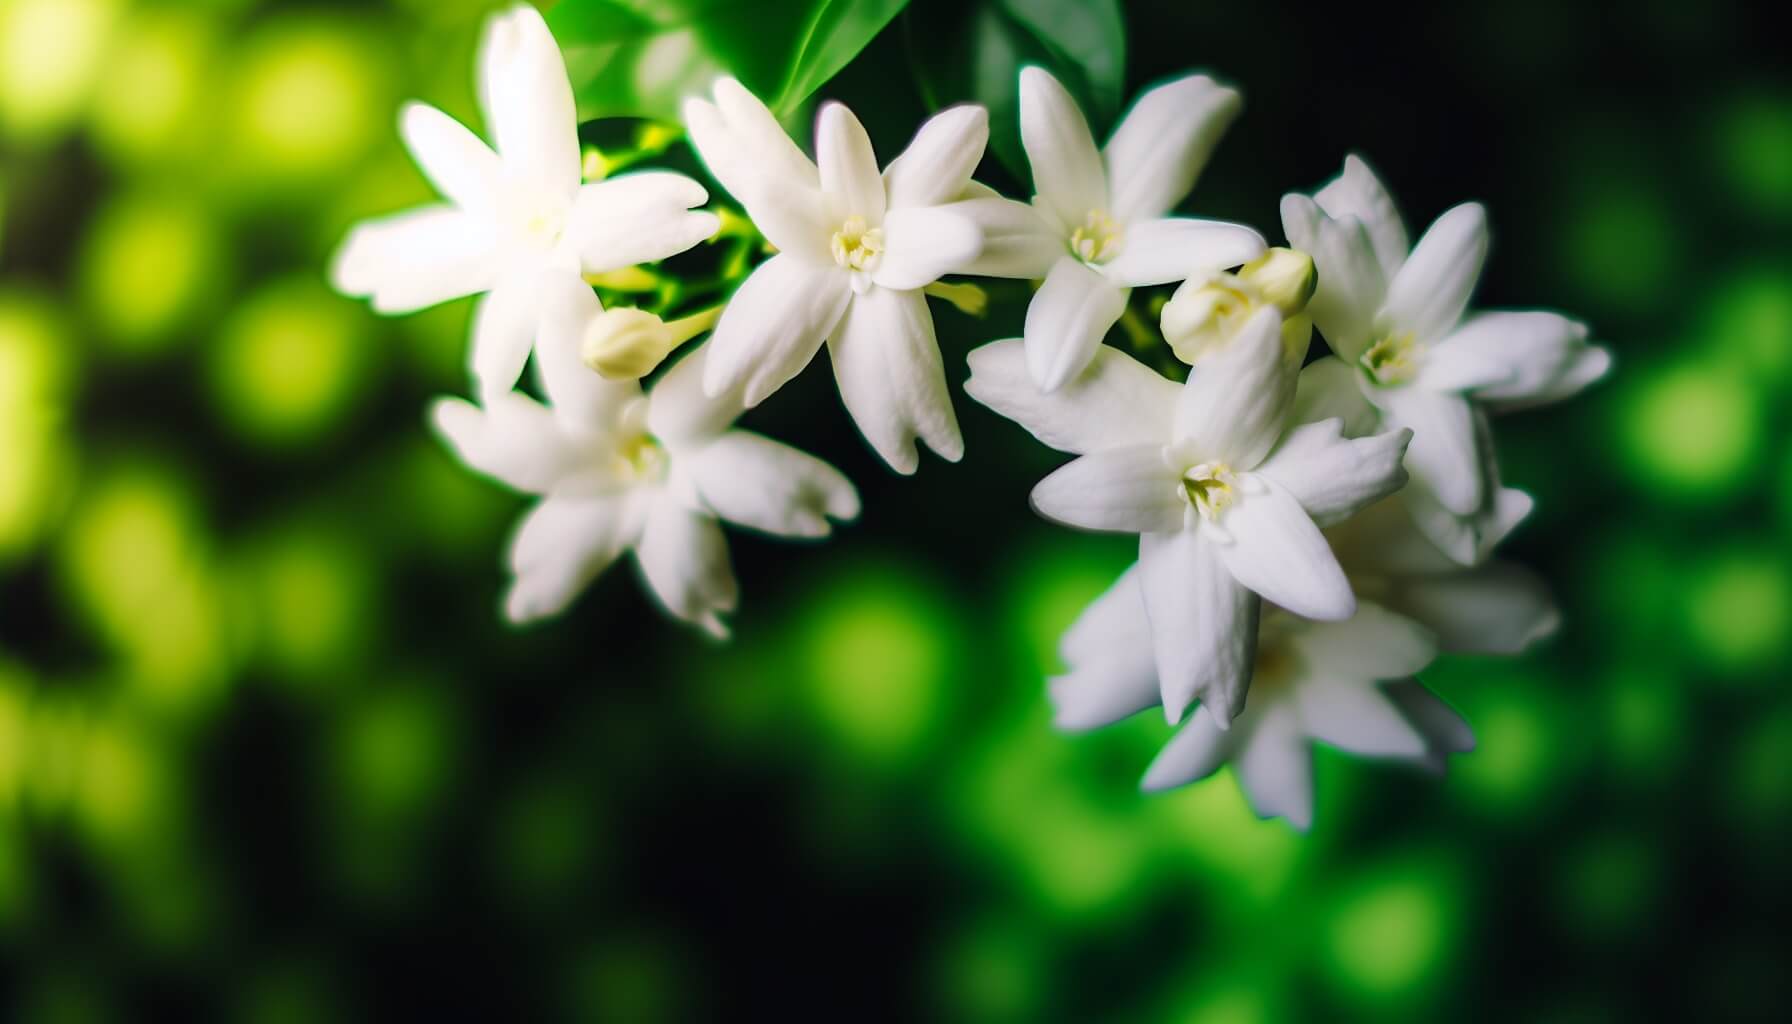 Jasmine flowers in bloom